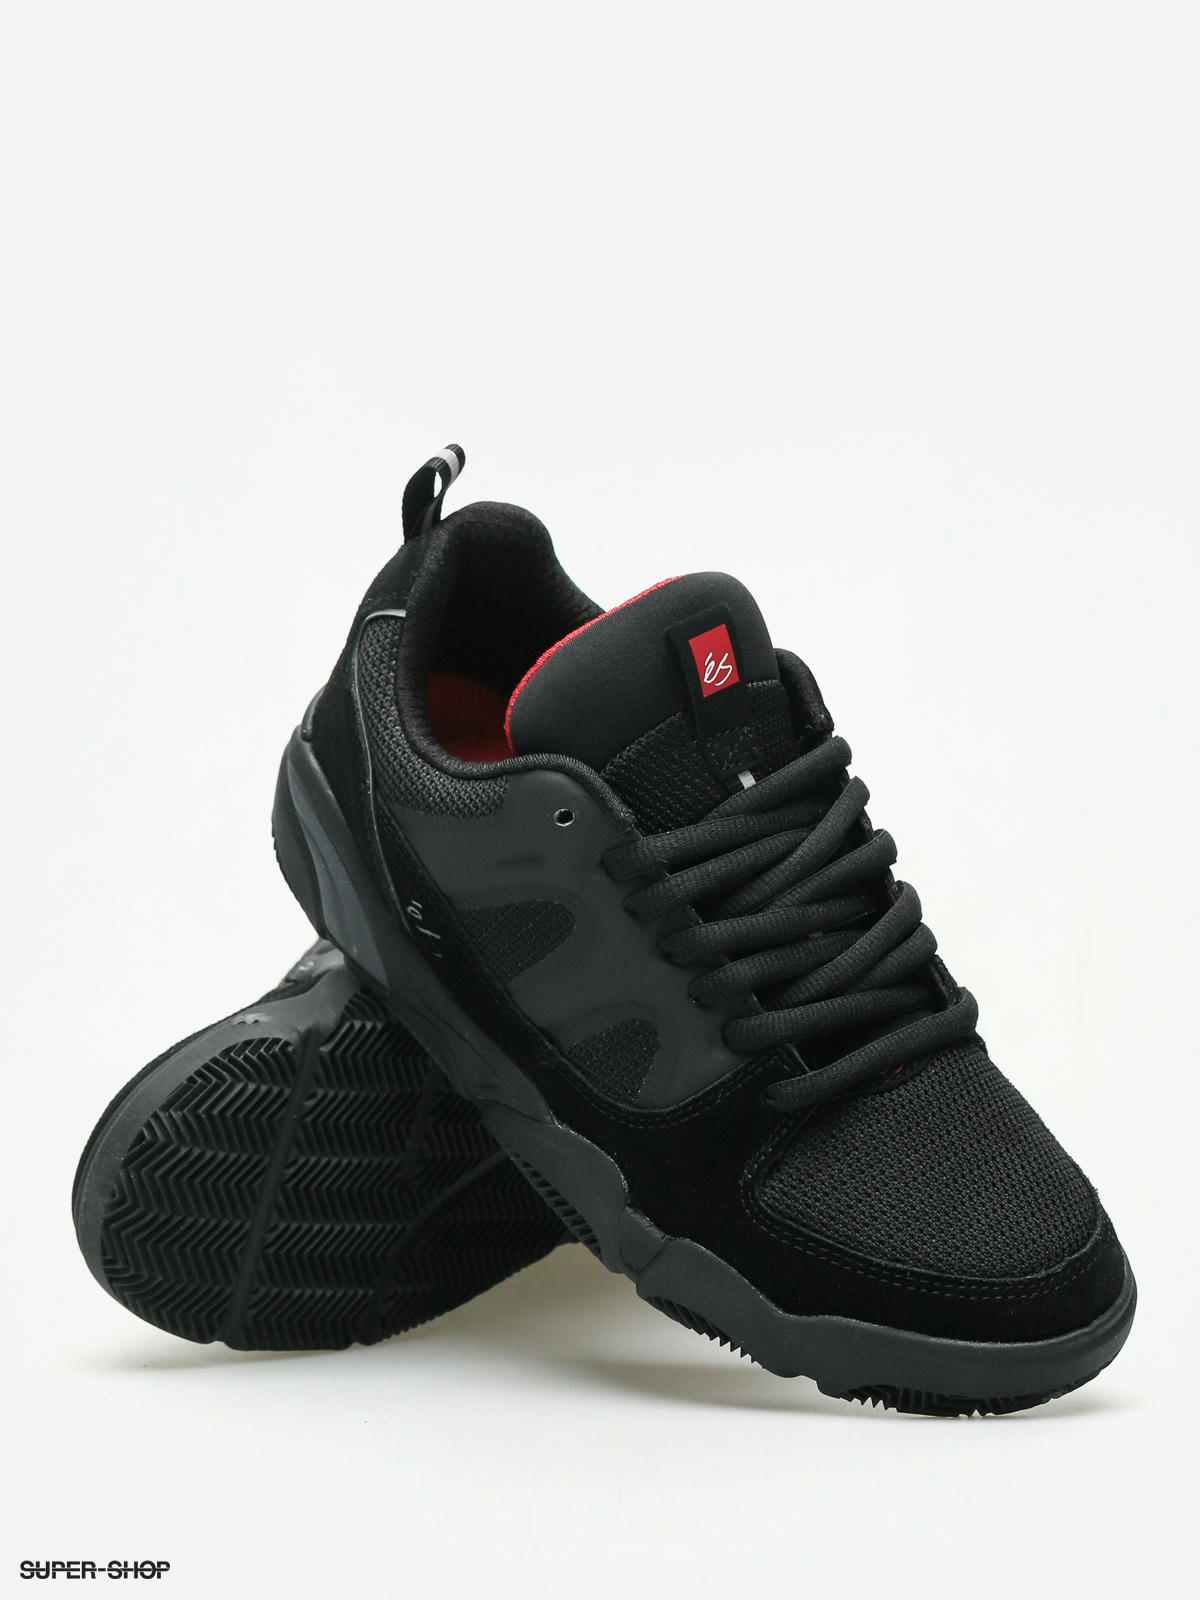 Grey Black Black Details about   eS Silo Shoes